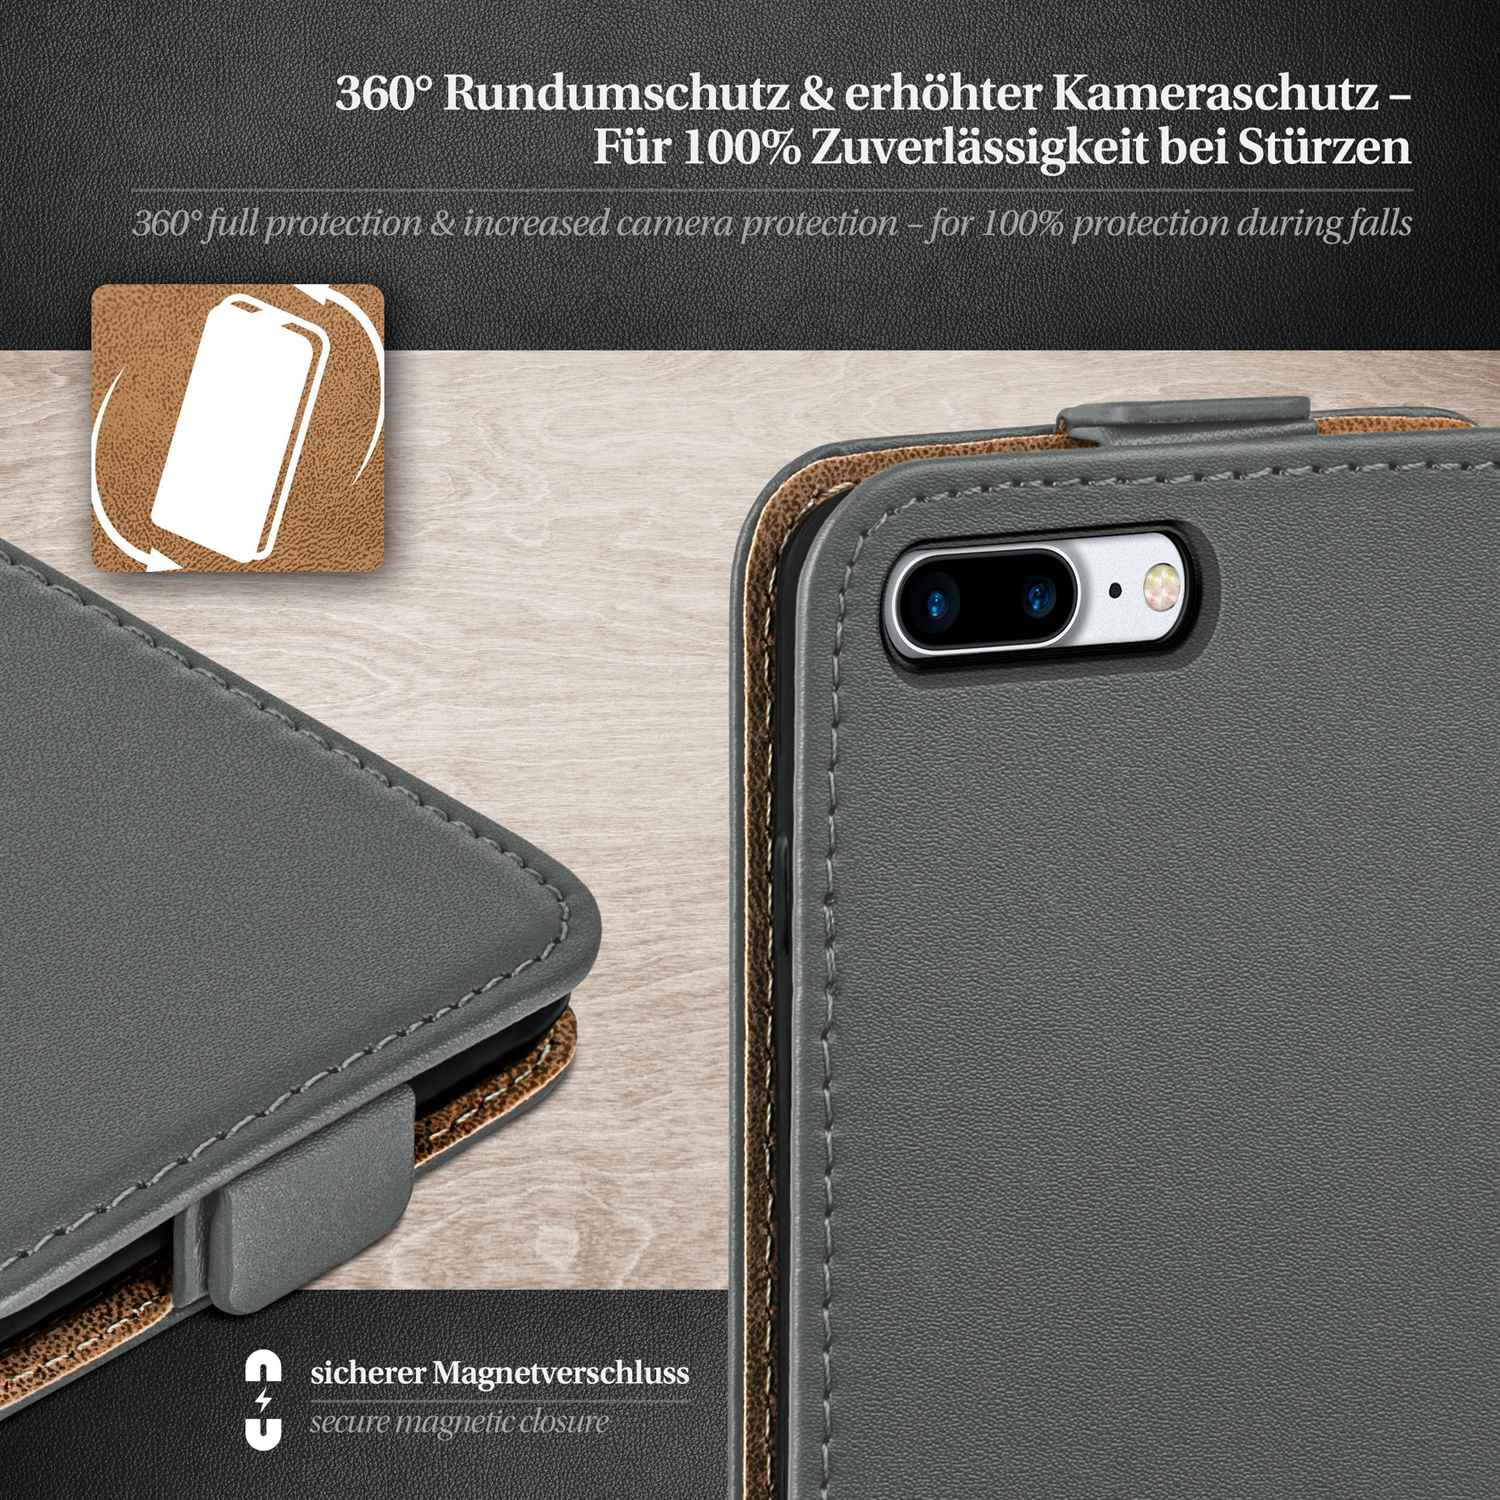 Flip Plus, Flip Apple, iPhone Case, MOEX Anthracite-Gray Cover, 8